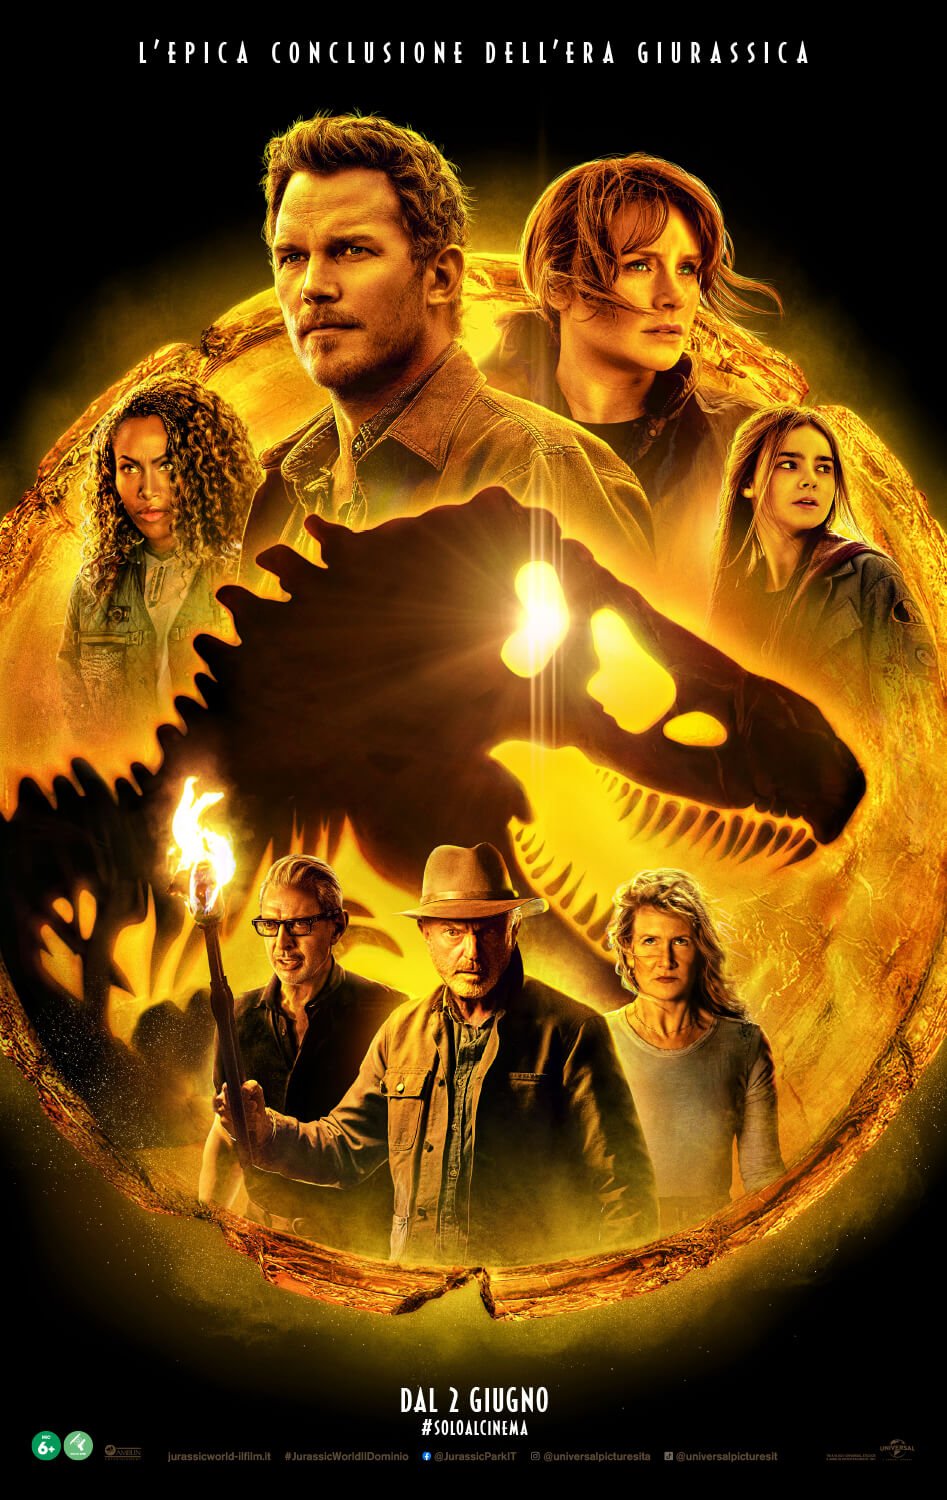 Il nuovo poster di Jurassic World - Il Dominio, rilasciato insieme alla featurette